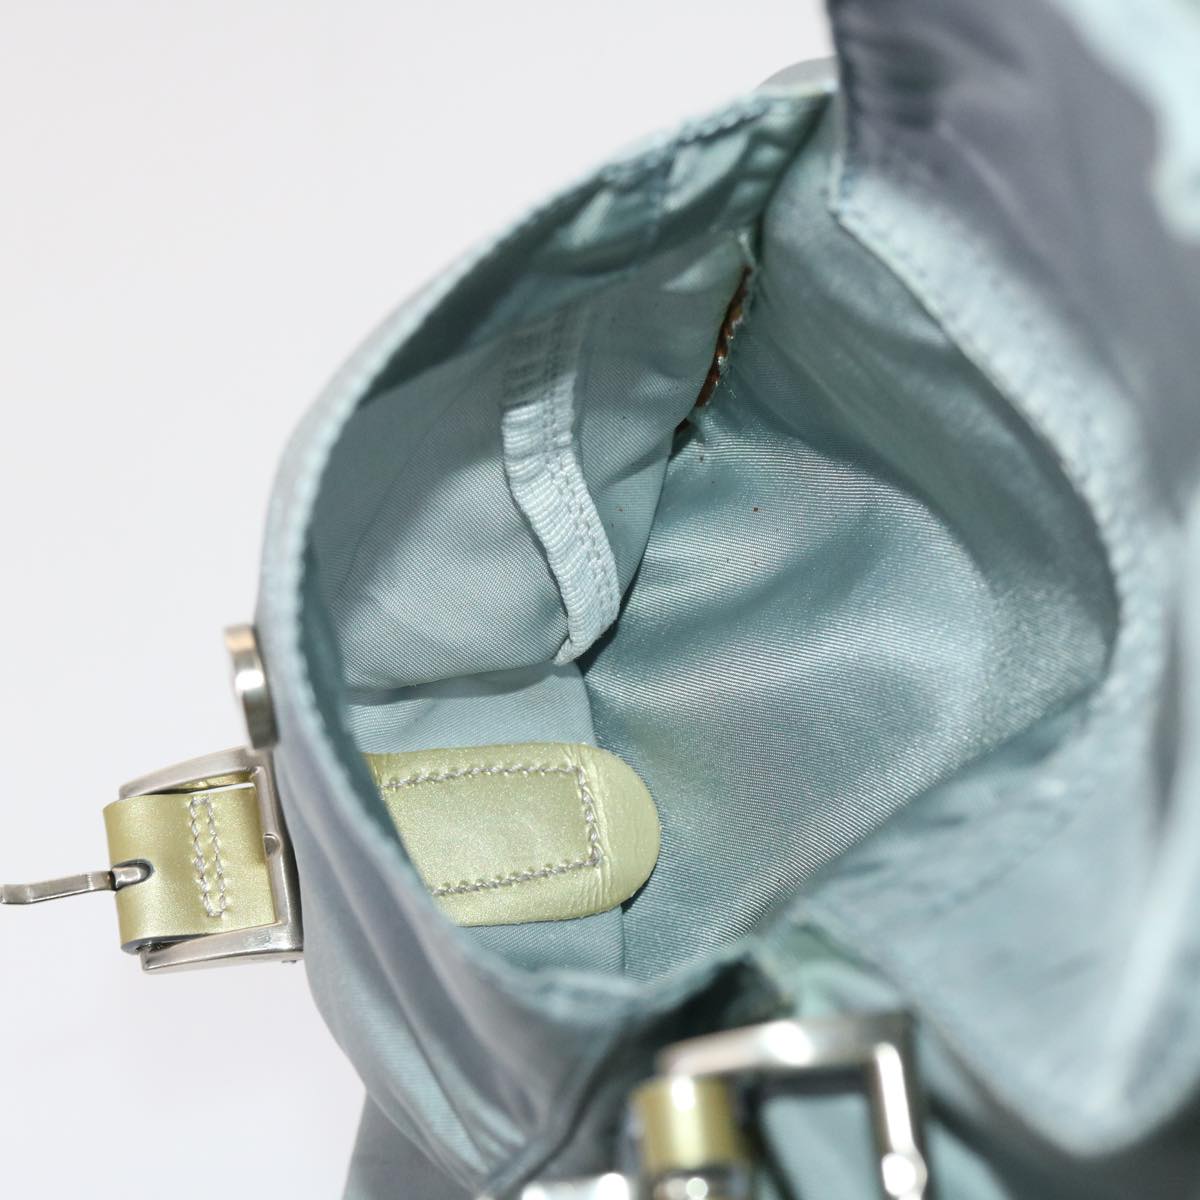 PRADA Backpack Nylon Light Blue Auth 45811